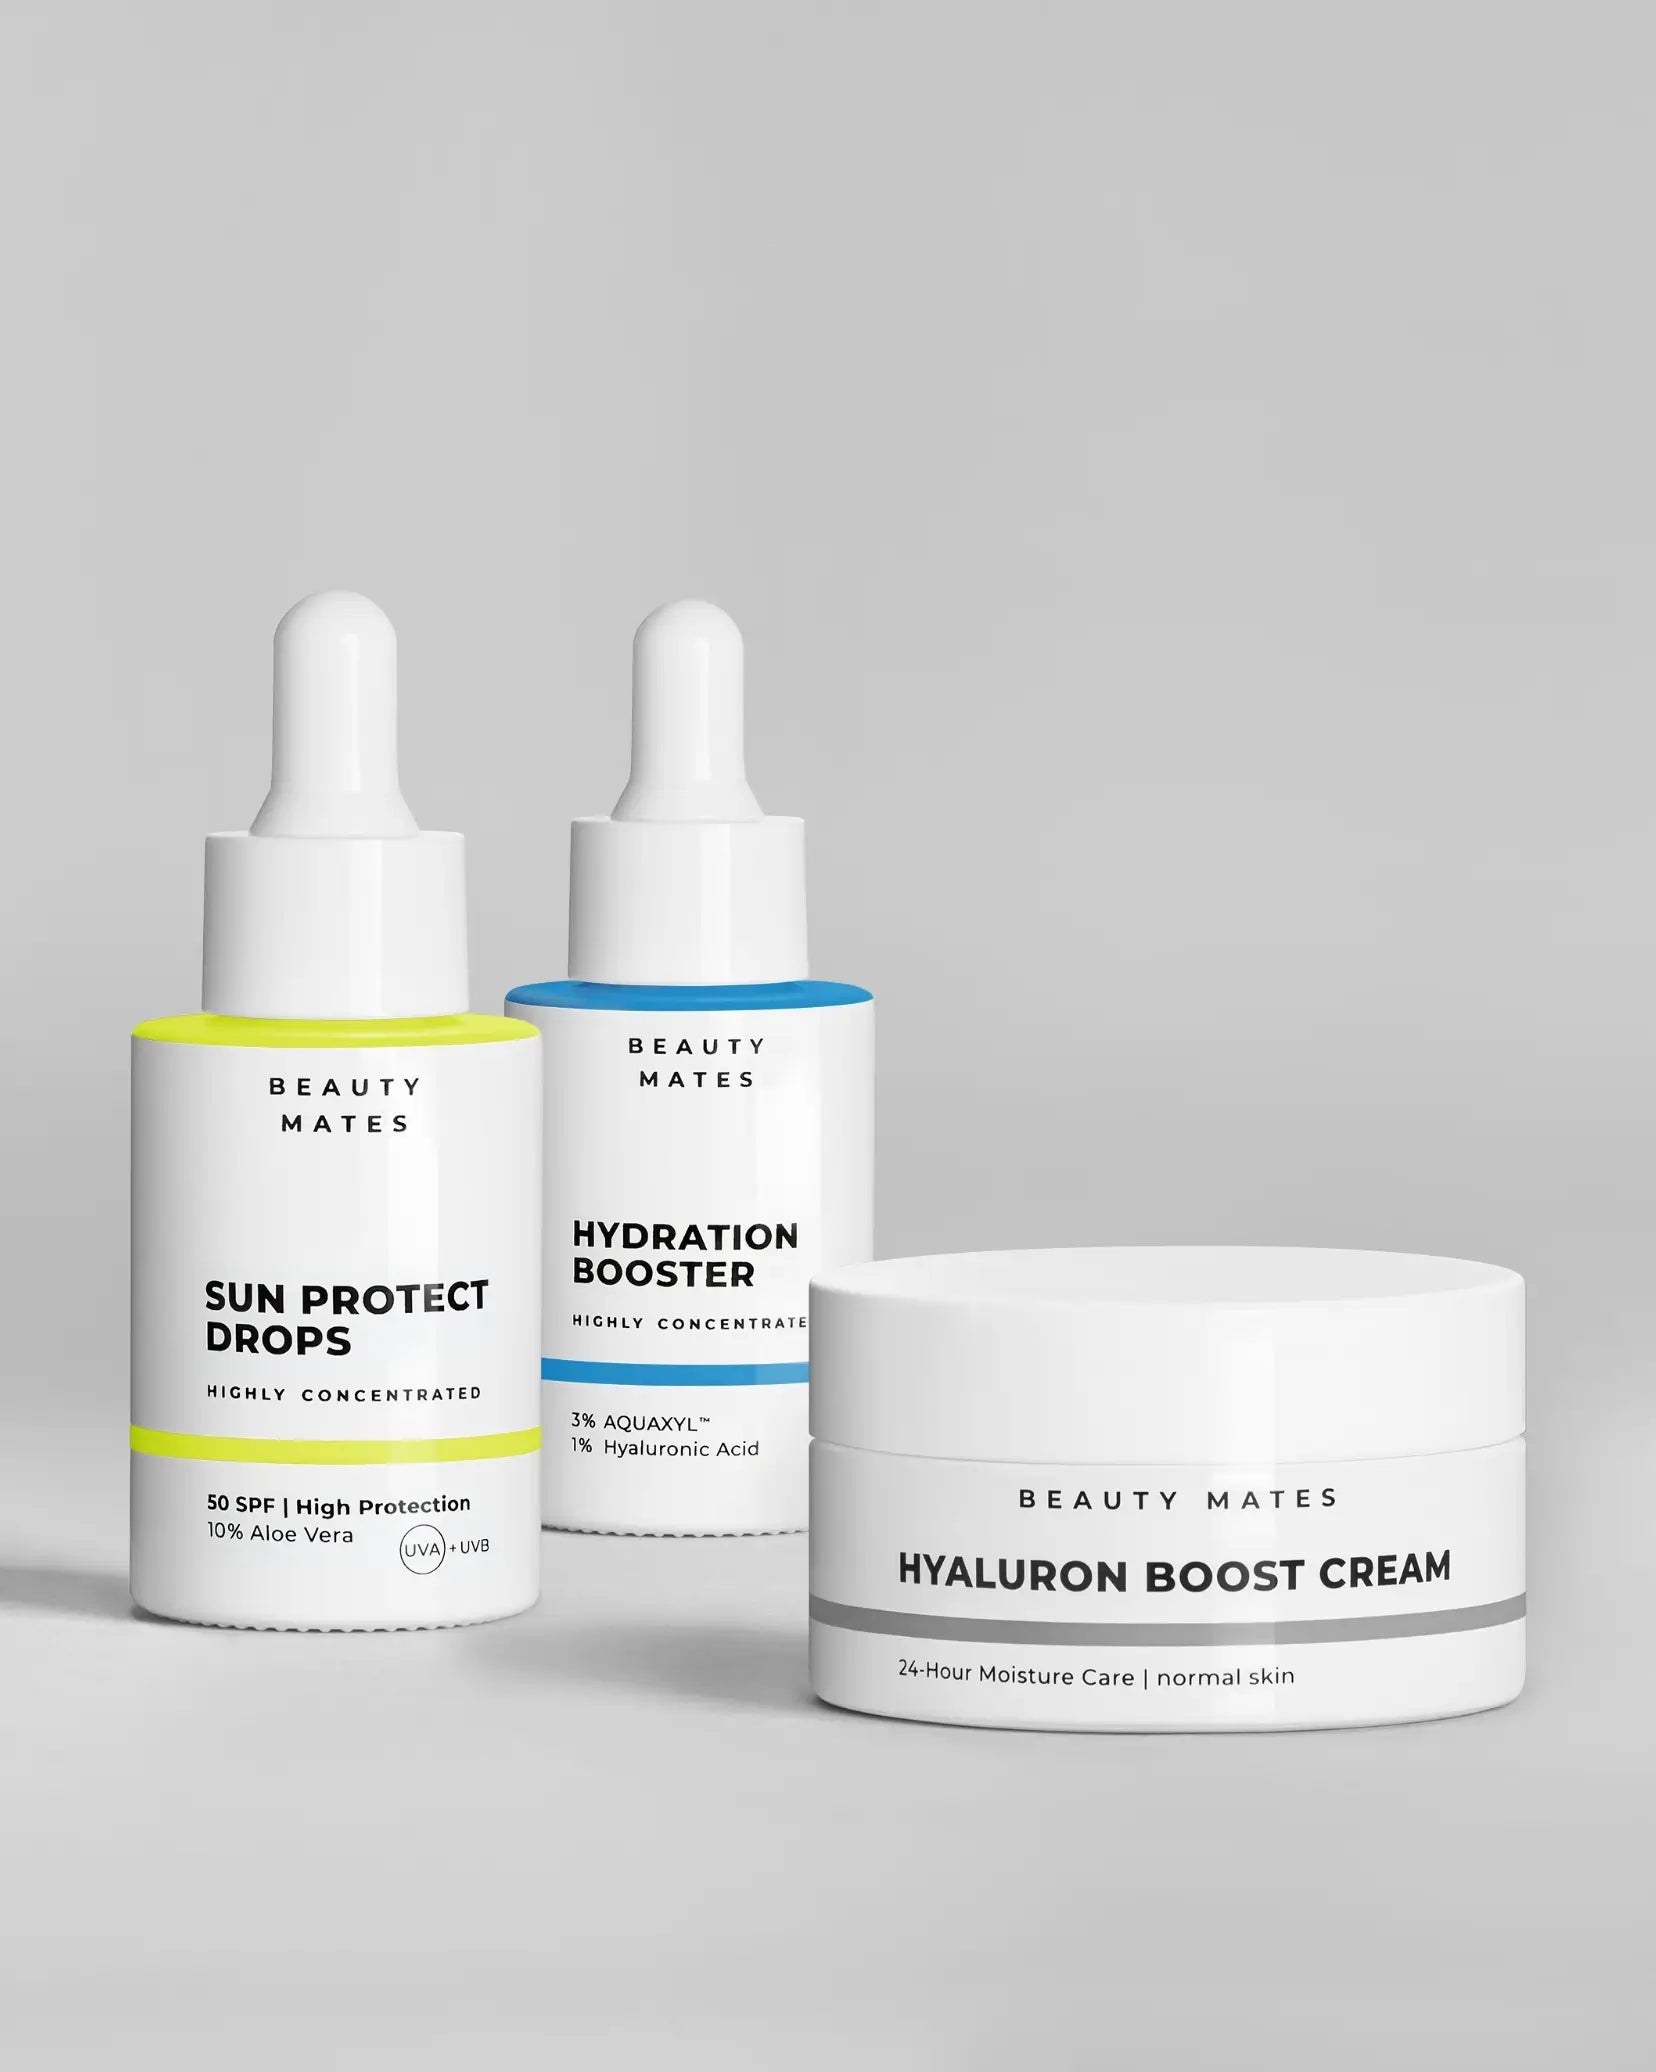 Beauty Mates Sun Protect Drops, Hydration Booster und Hyaluron Boost Cream nebeneinander auf grauem Hintergrund.